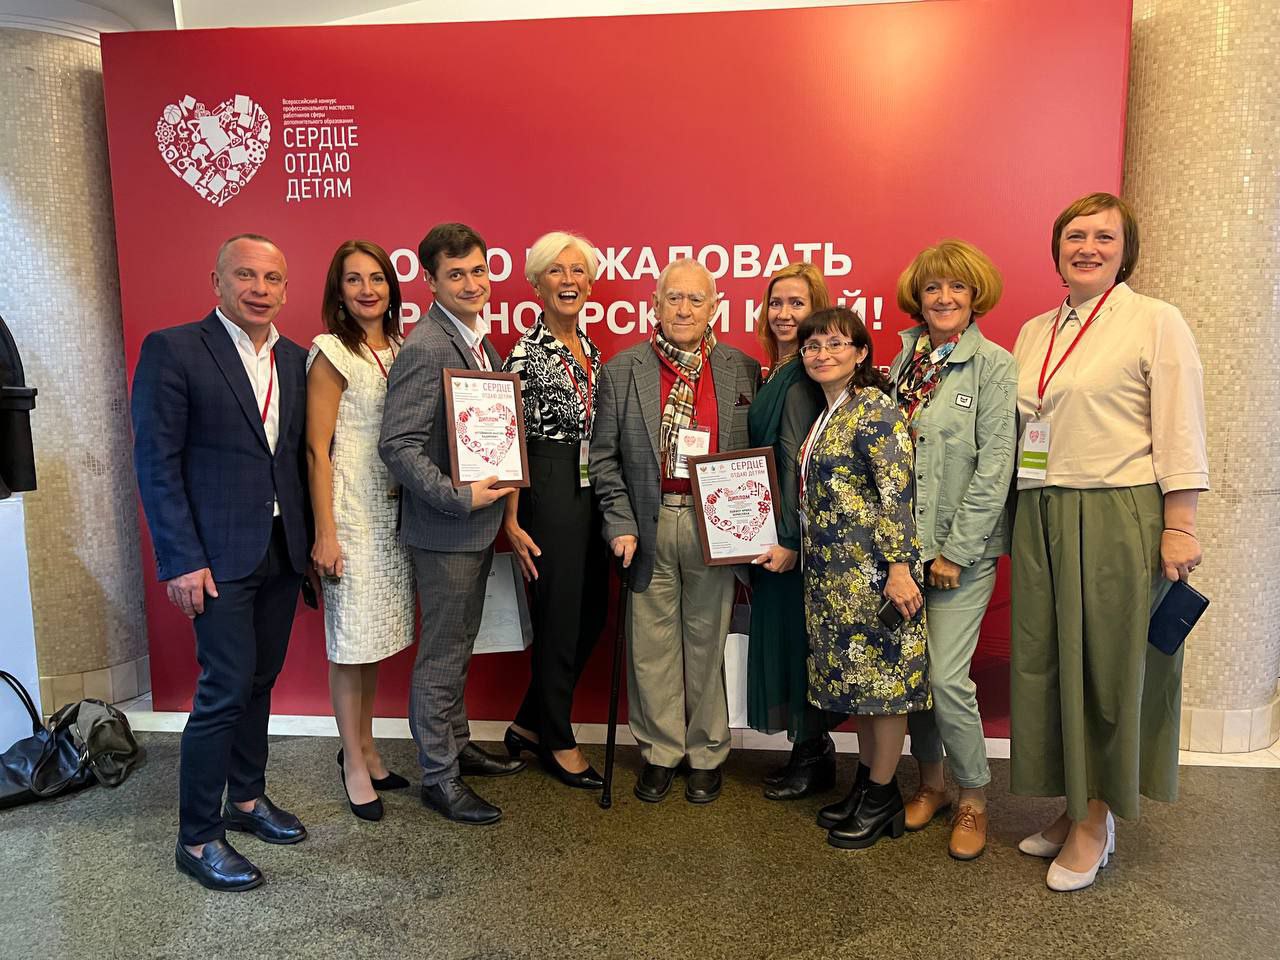 Ярославские педагоги борются за победу во всероссийском конкурсе «Сердце отдаю детям»